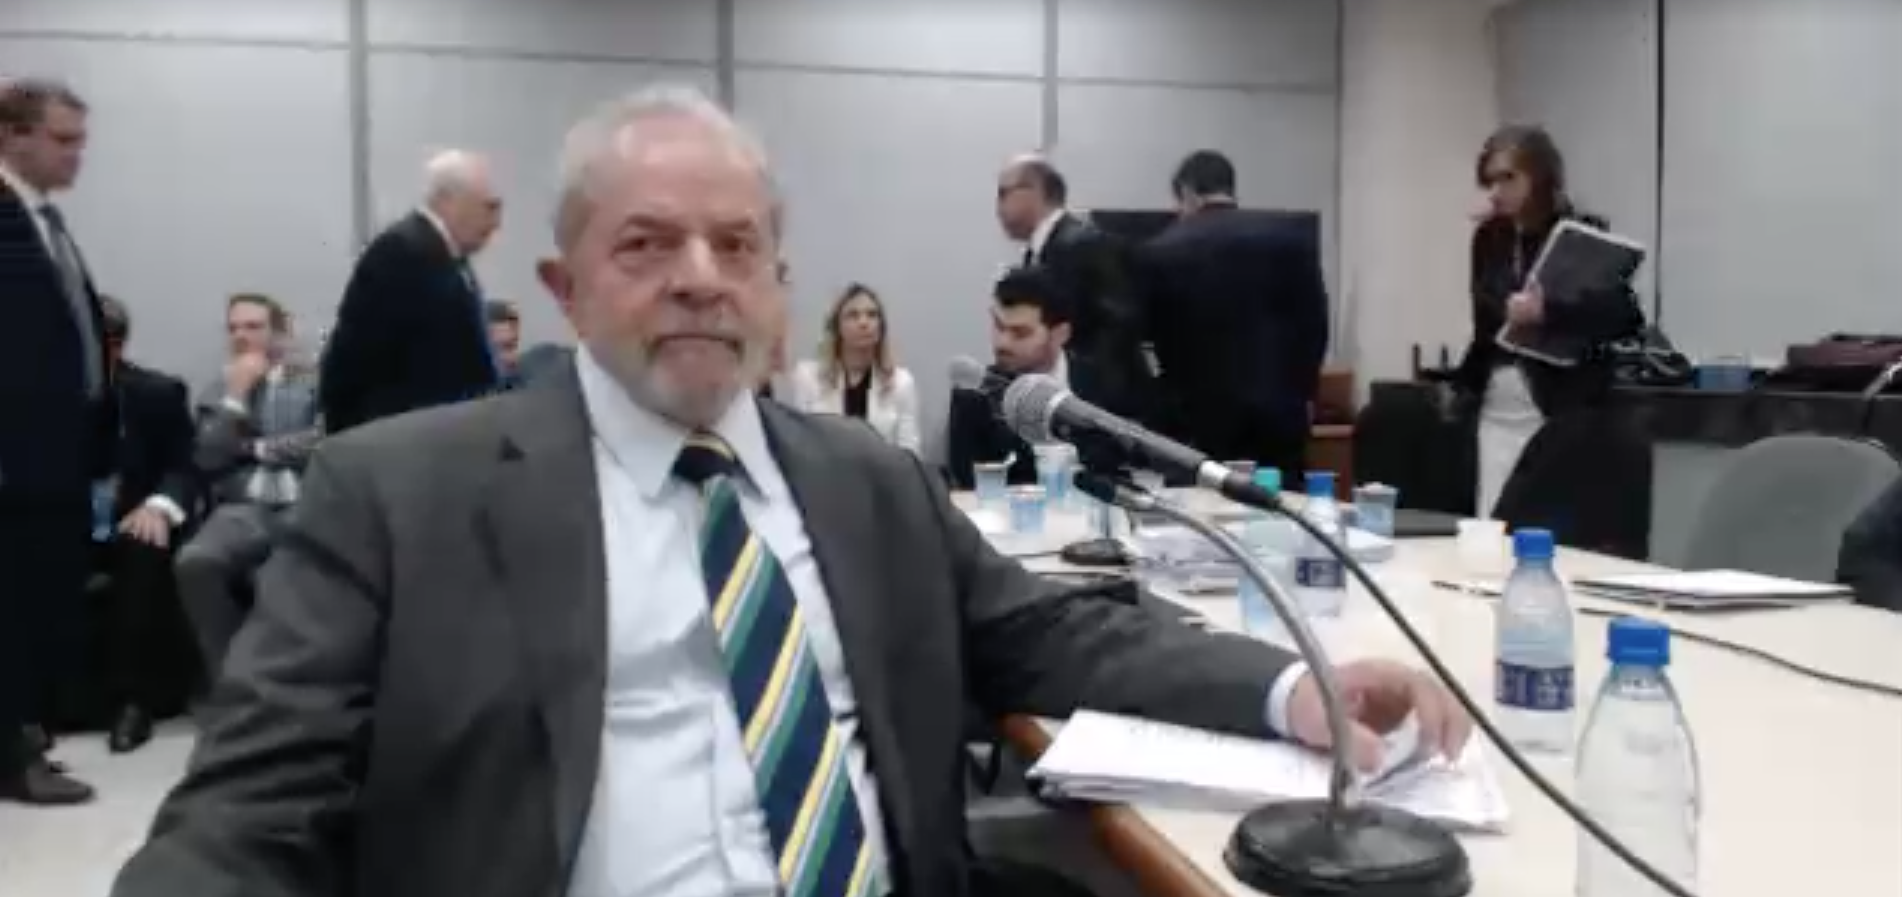 Frame capturado das imagens disponibilizadas do depoimento de Lula.